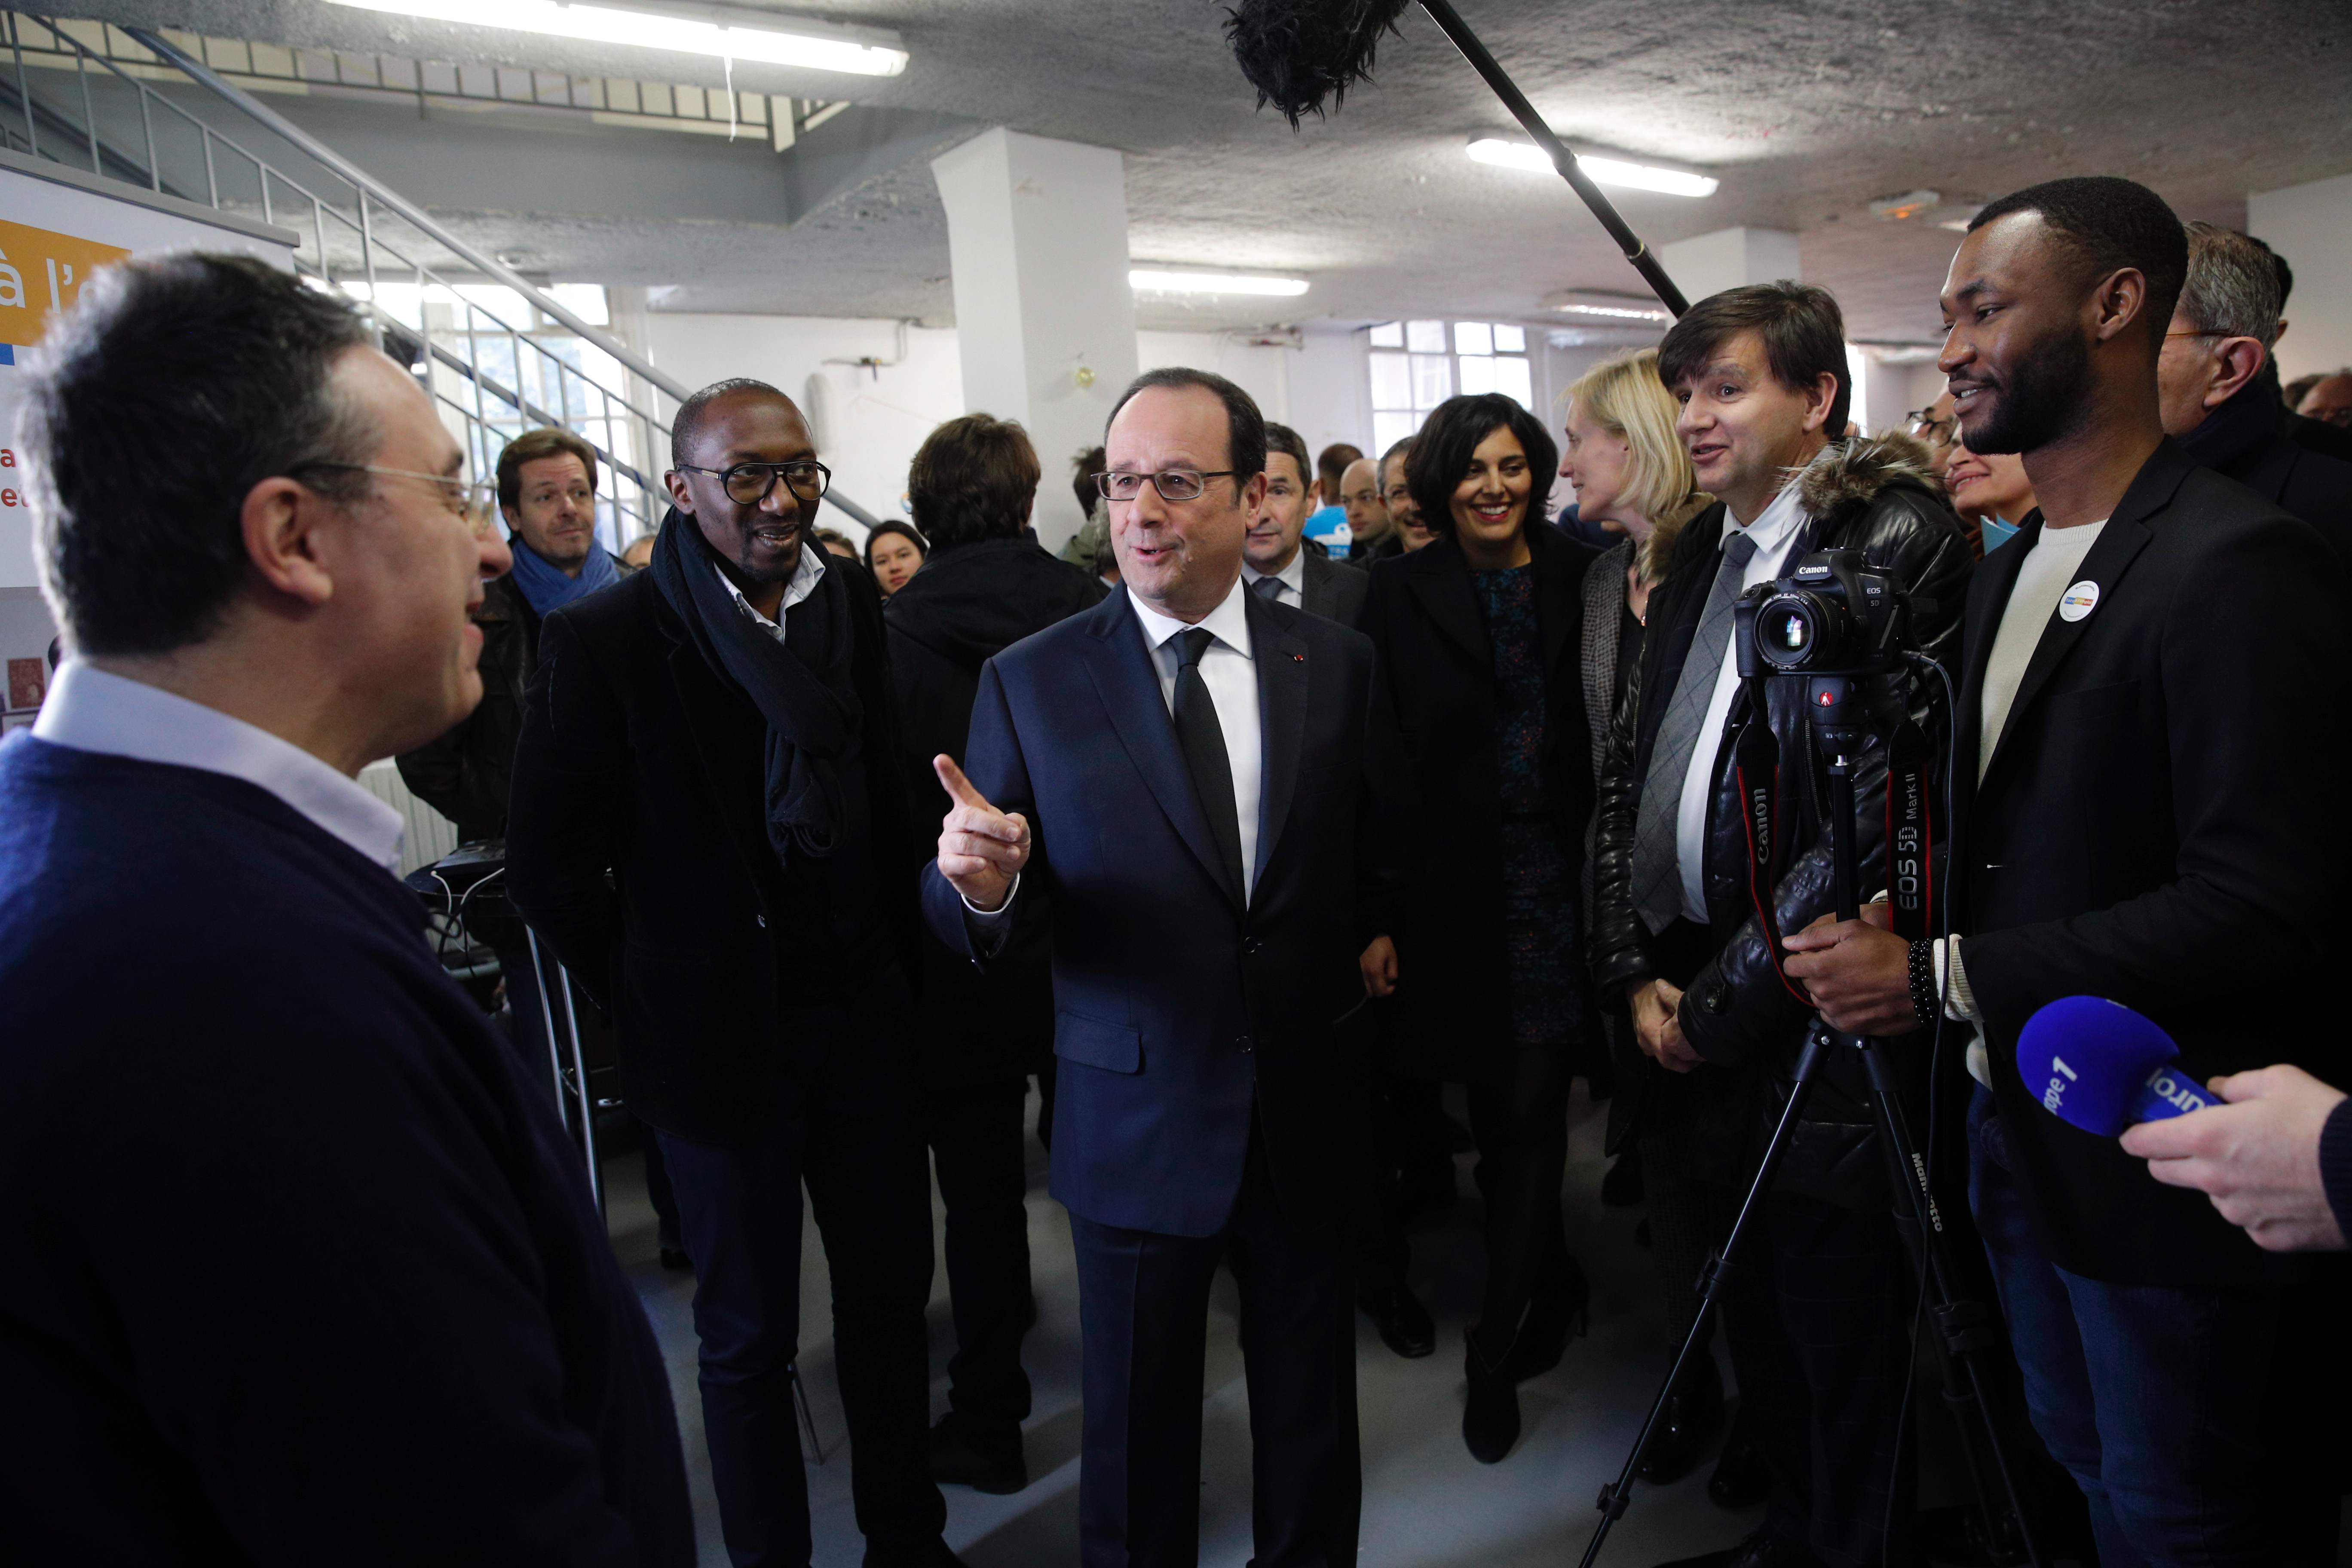 حديث بين الرئيس الفرنسى فرانسوا هولاند وأحد المسئولين فى صندوق مكافحة الفقر بباريس